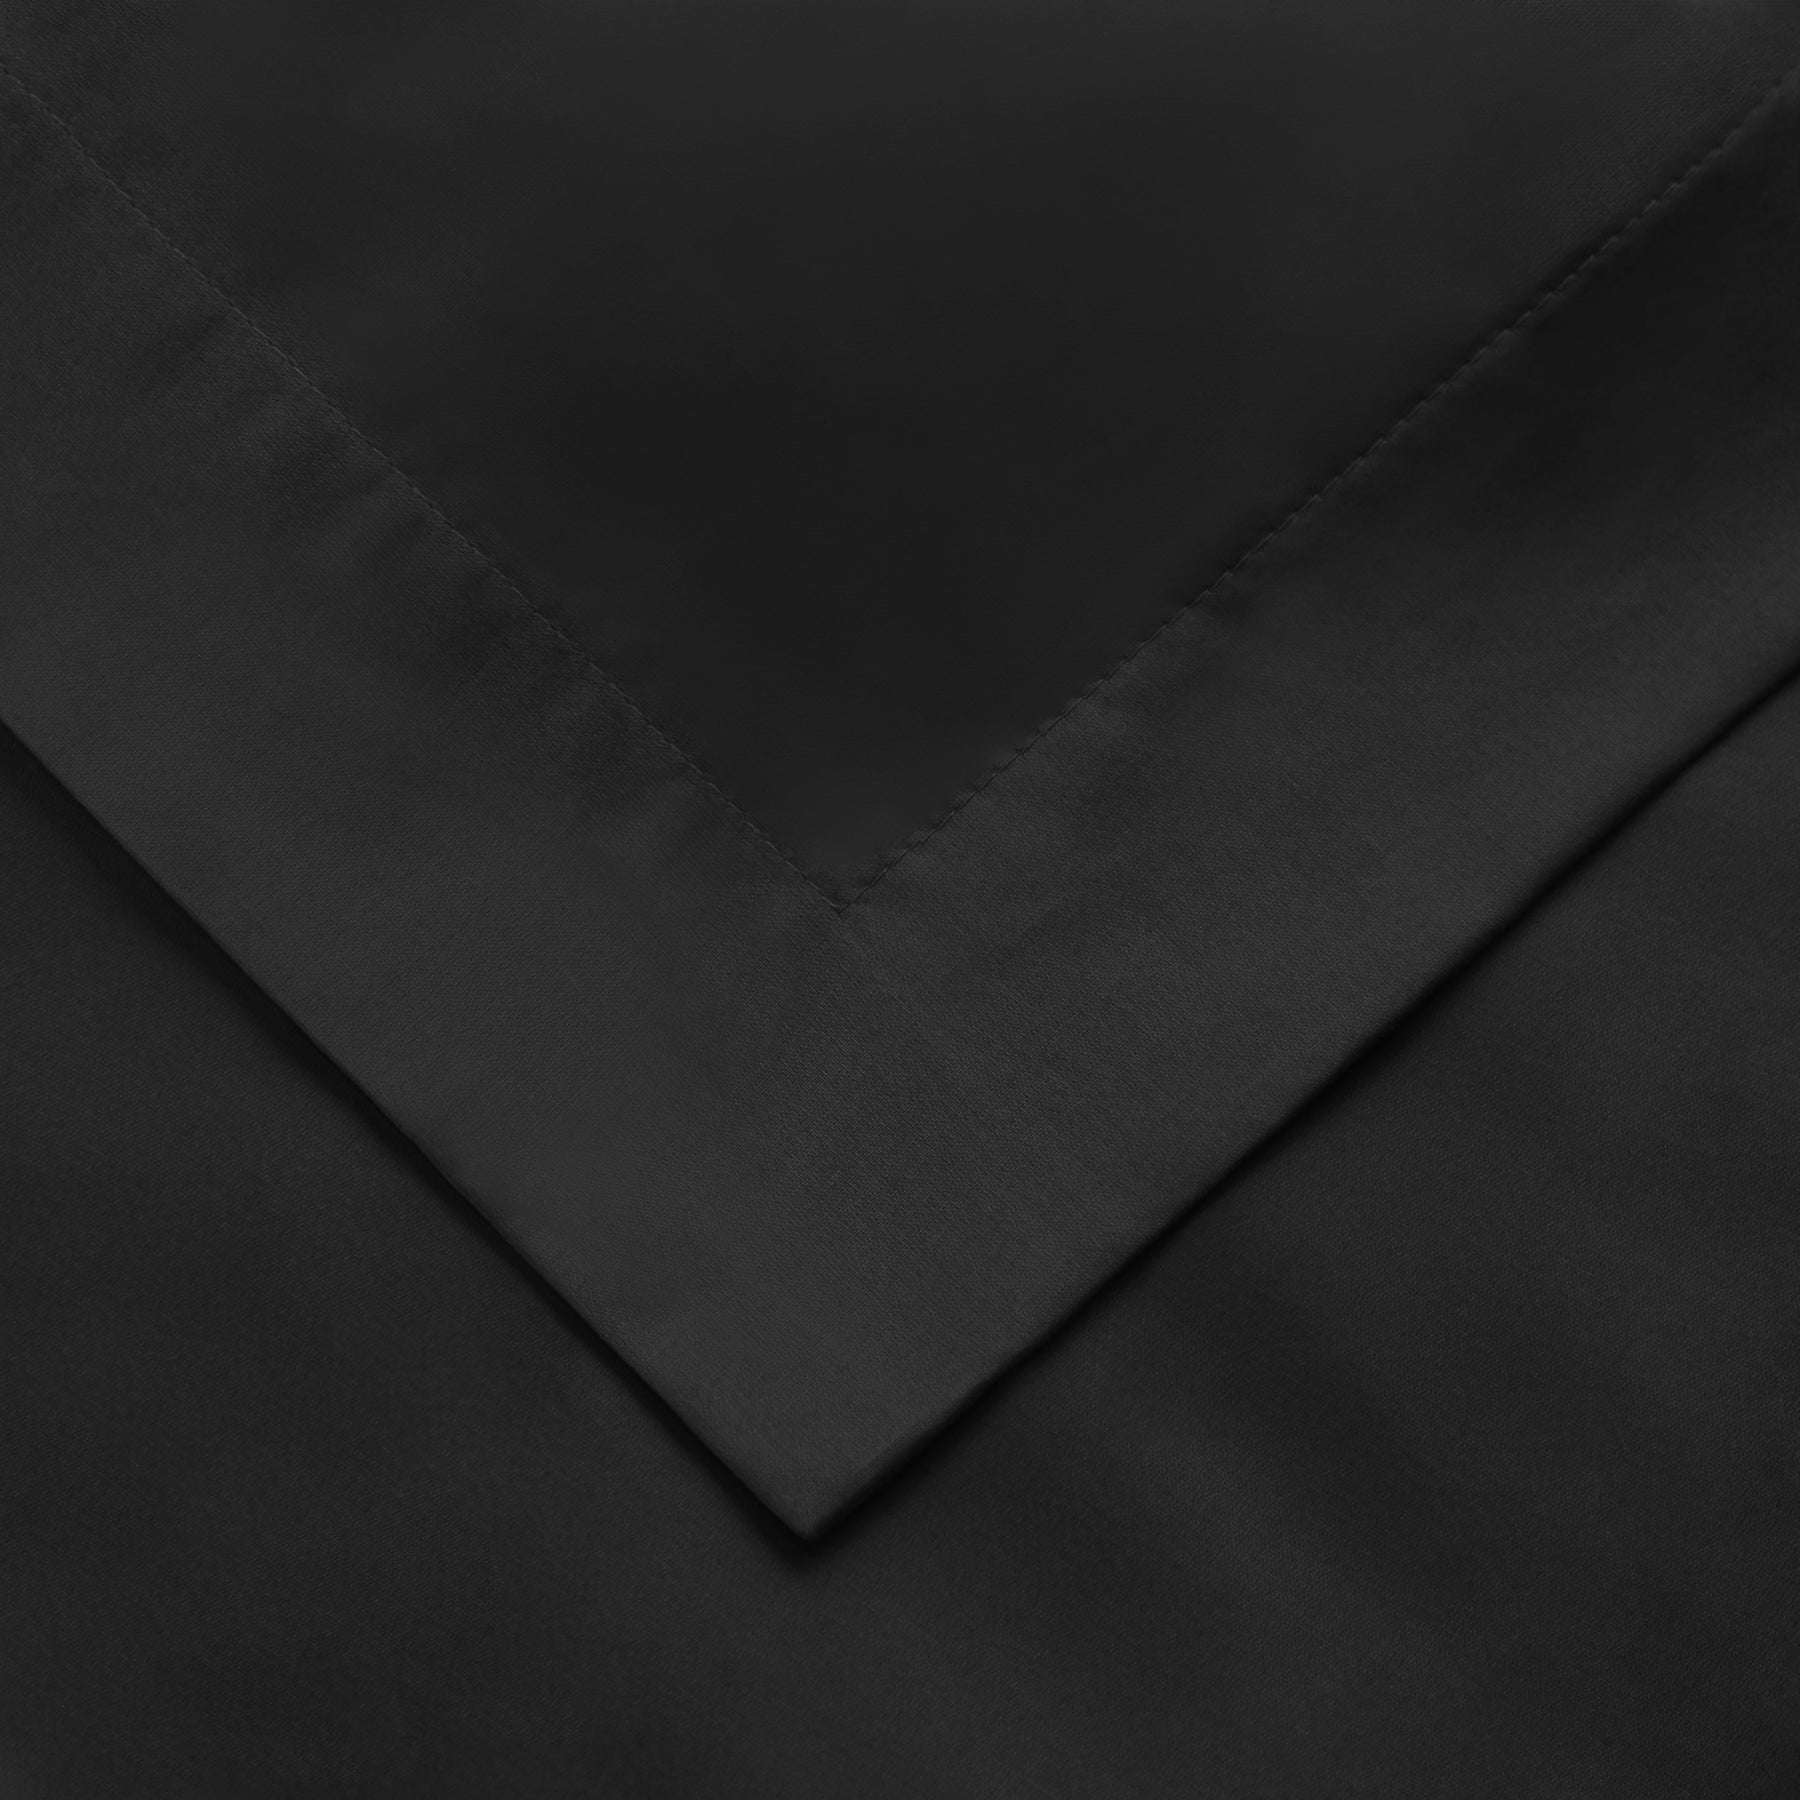 Superior Premium 650 Thread Count Egyptian Cotton Solid Duvet Cover Set - Black